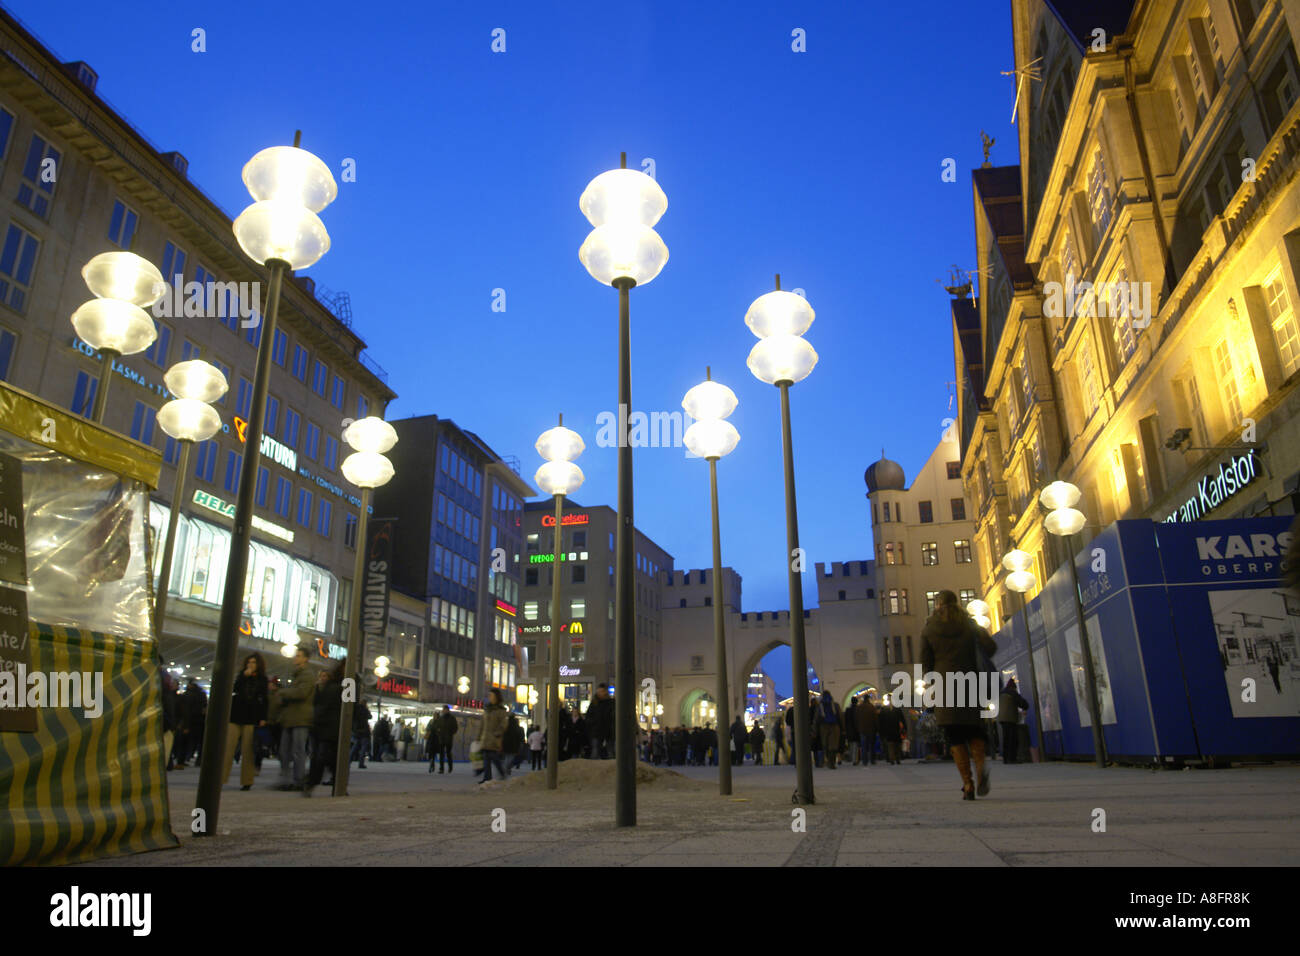 La Karlsplatz stachus Munich Bavaria Allemagne au crépuscule Banque D'Images